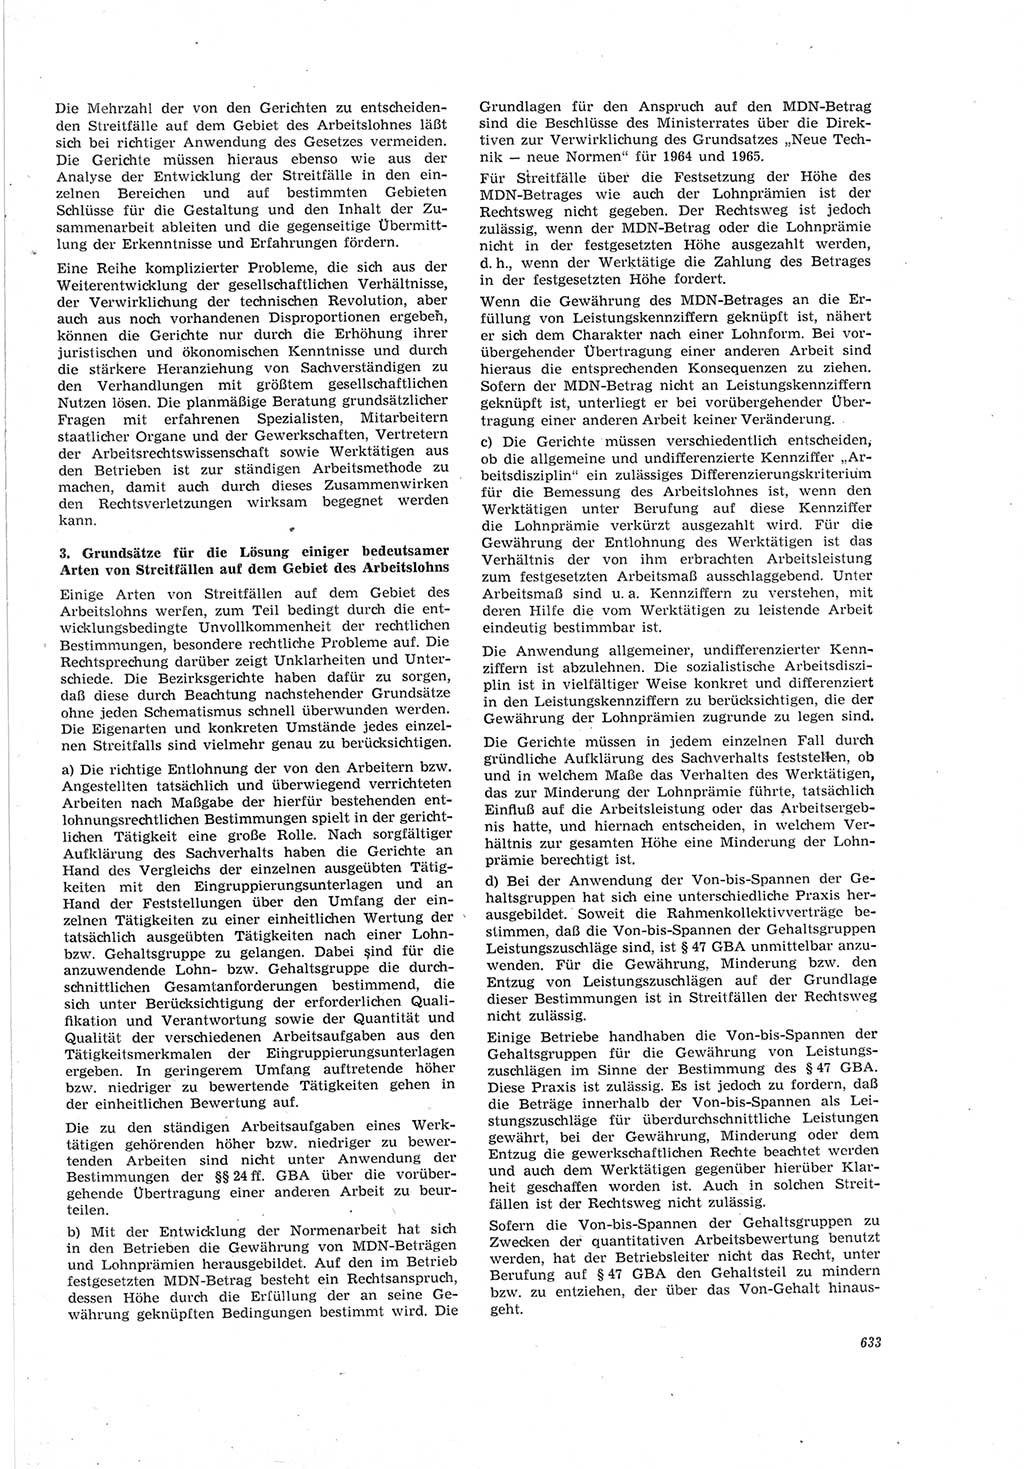 Neue Justiz (NJ), Zeitschrift für Recht und Rechtswissenschaft [Deutsche Demokratische Republik (DDR)], 19. Jahrgang 1965, Seite 633 (NJ DDR 1965, S. 633)